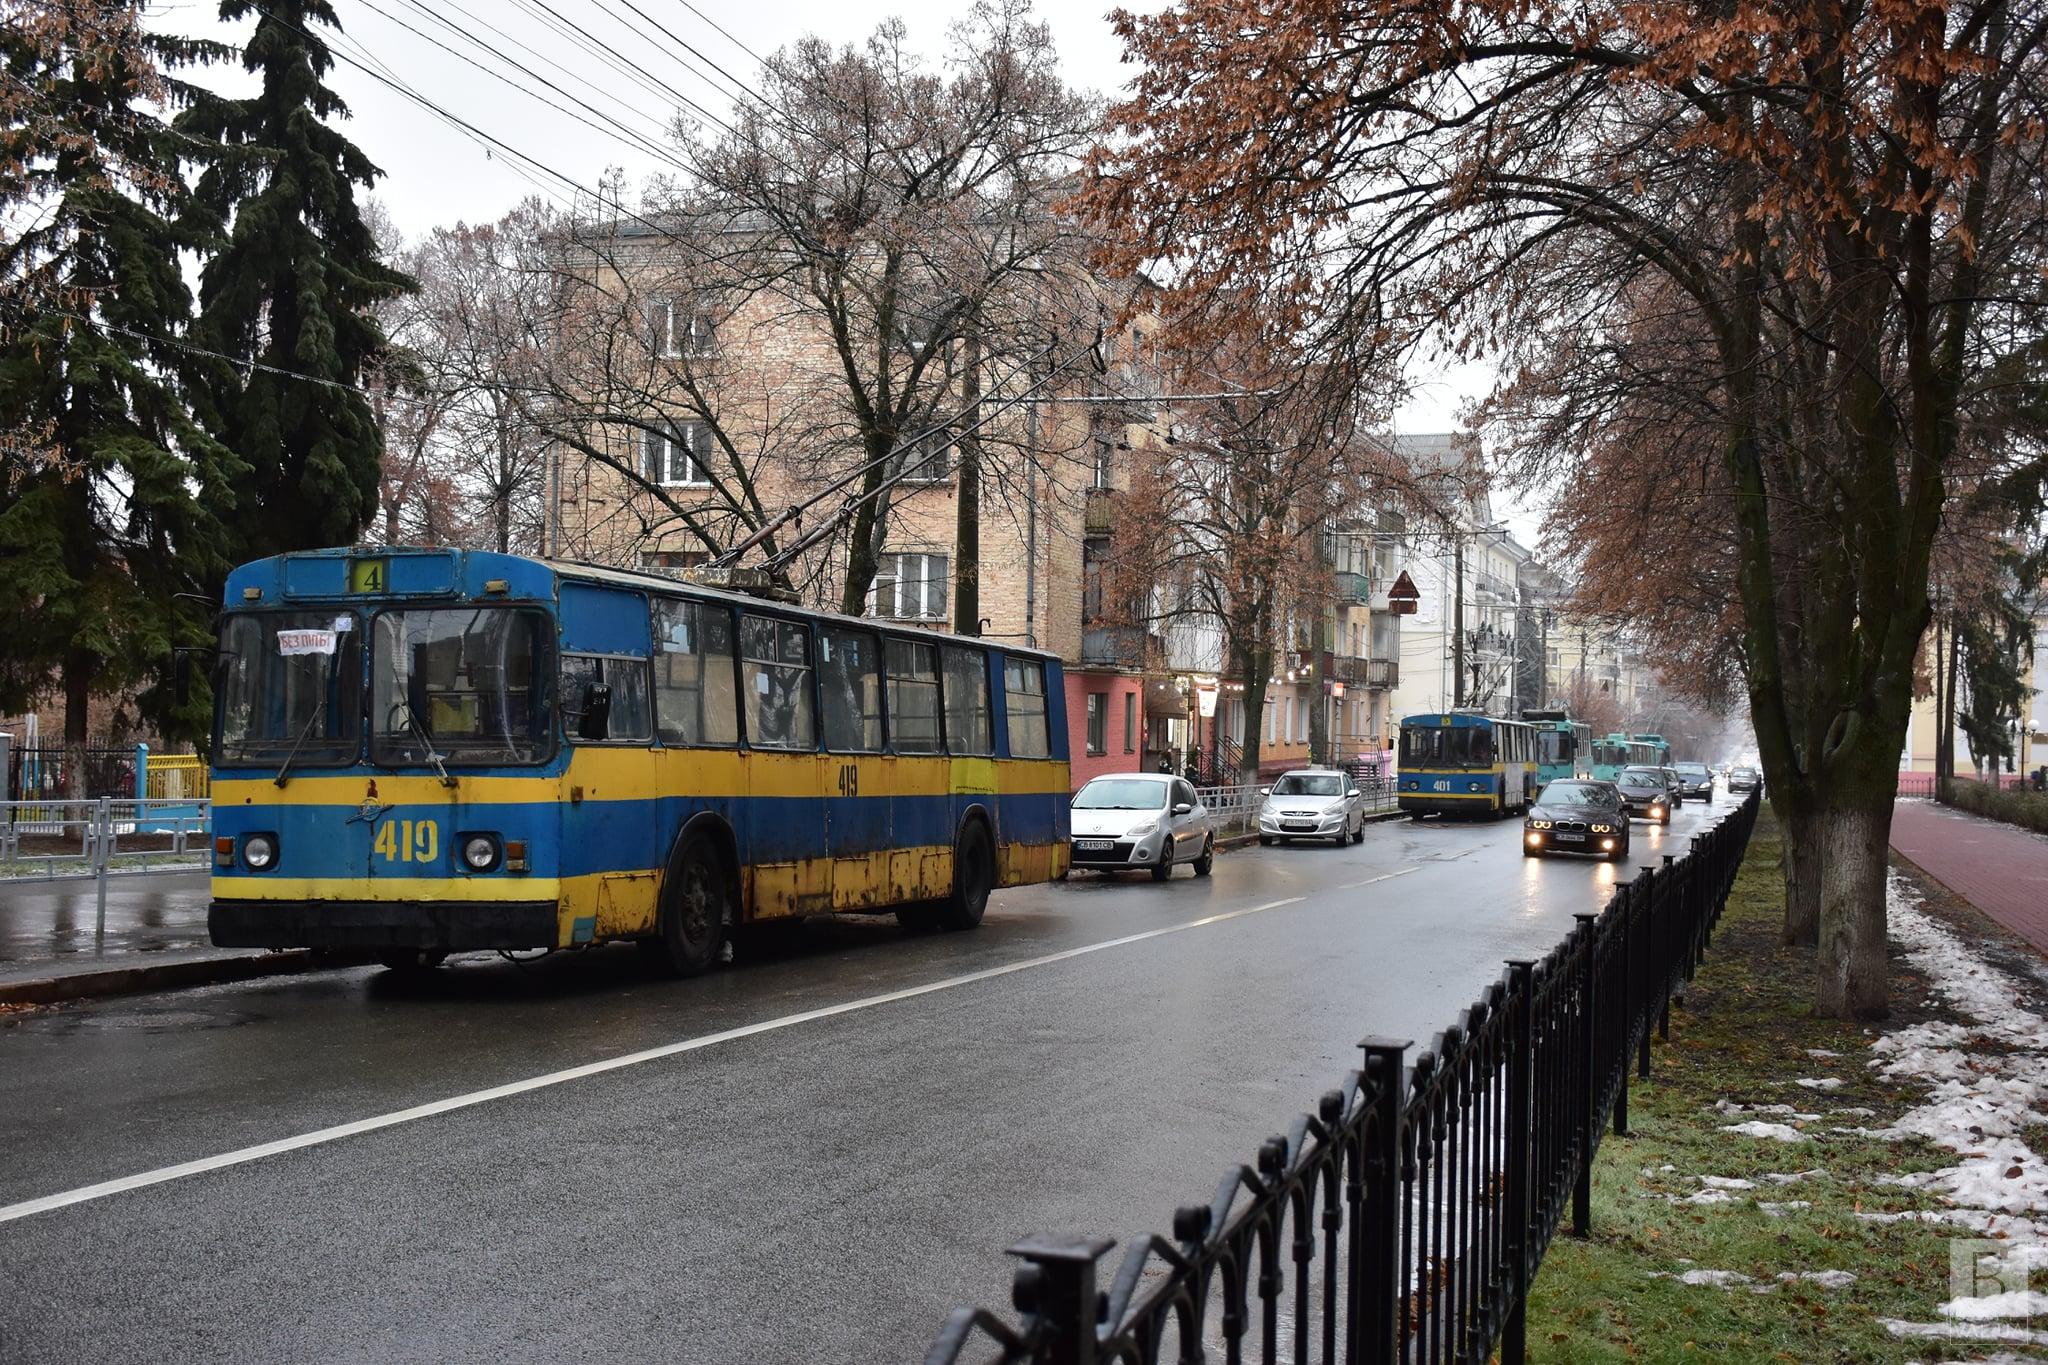  Жертви негоди: у Чернігові на відновлення руху тролейбусів чекають ближче до вечора. ФОТО